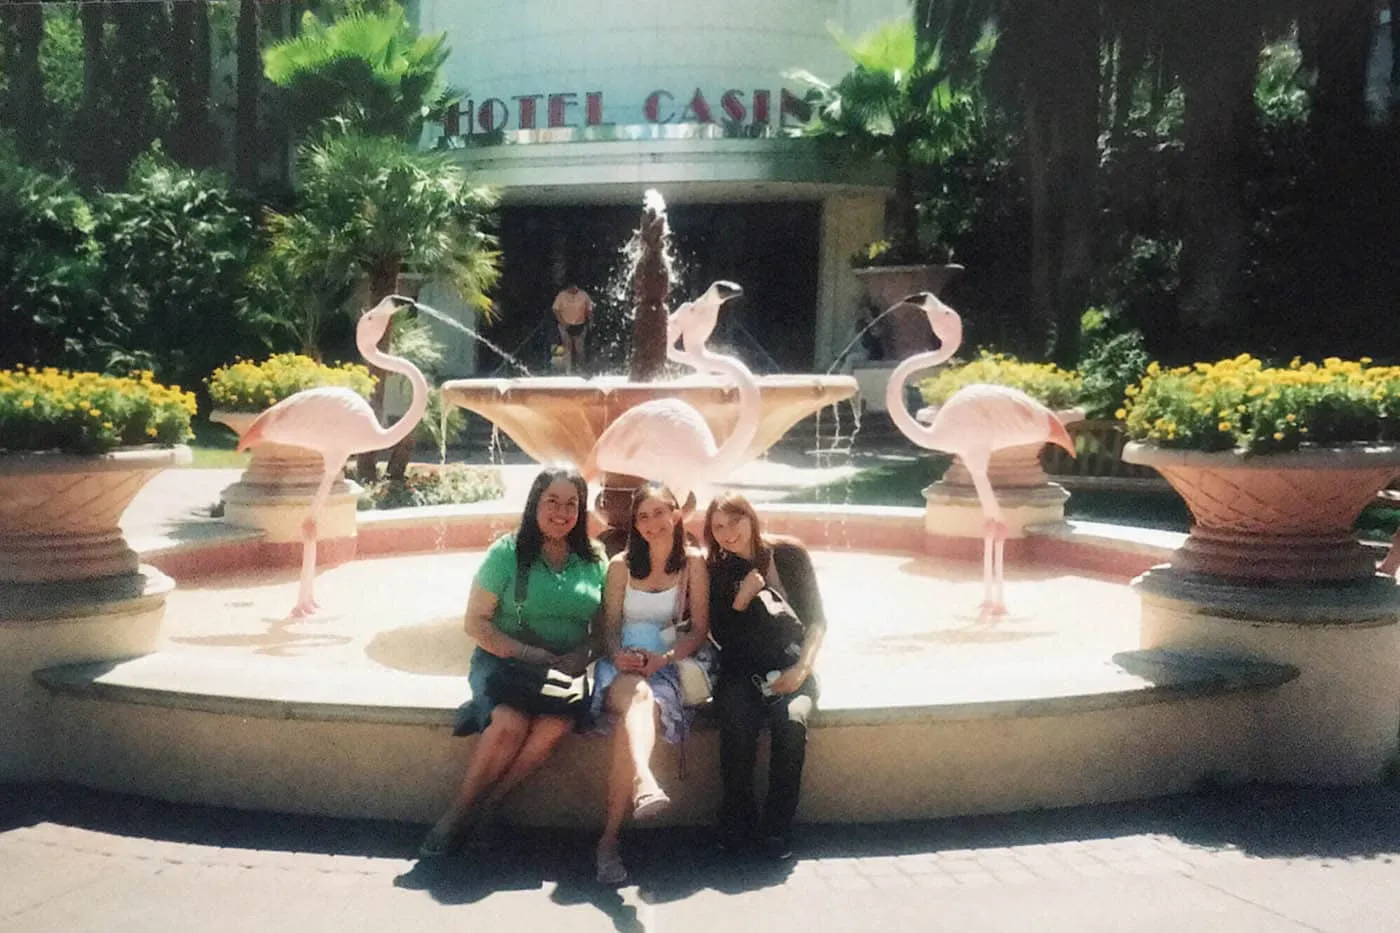 Flamingos at the Wildlife Habitat at the Flamingo Hotel and Casino in Las Vegas.